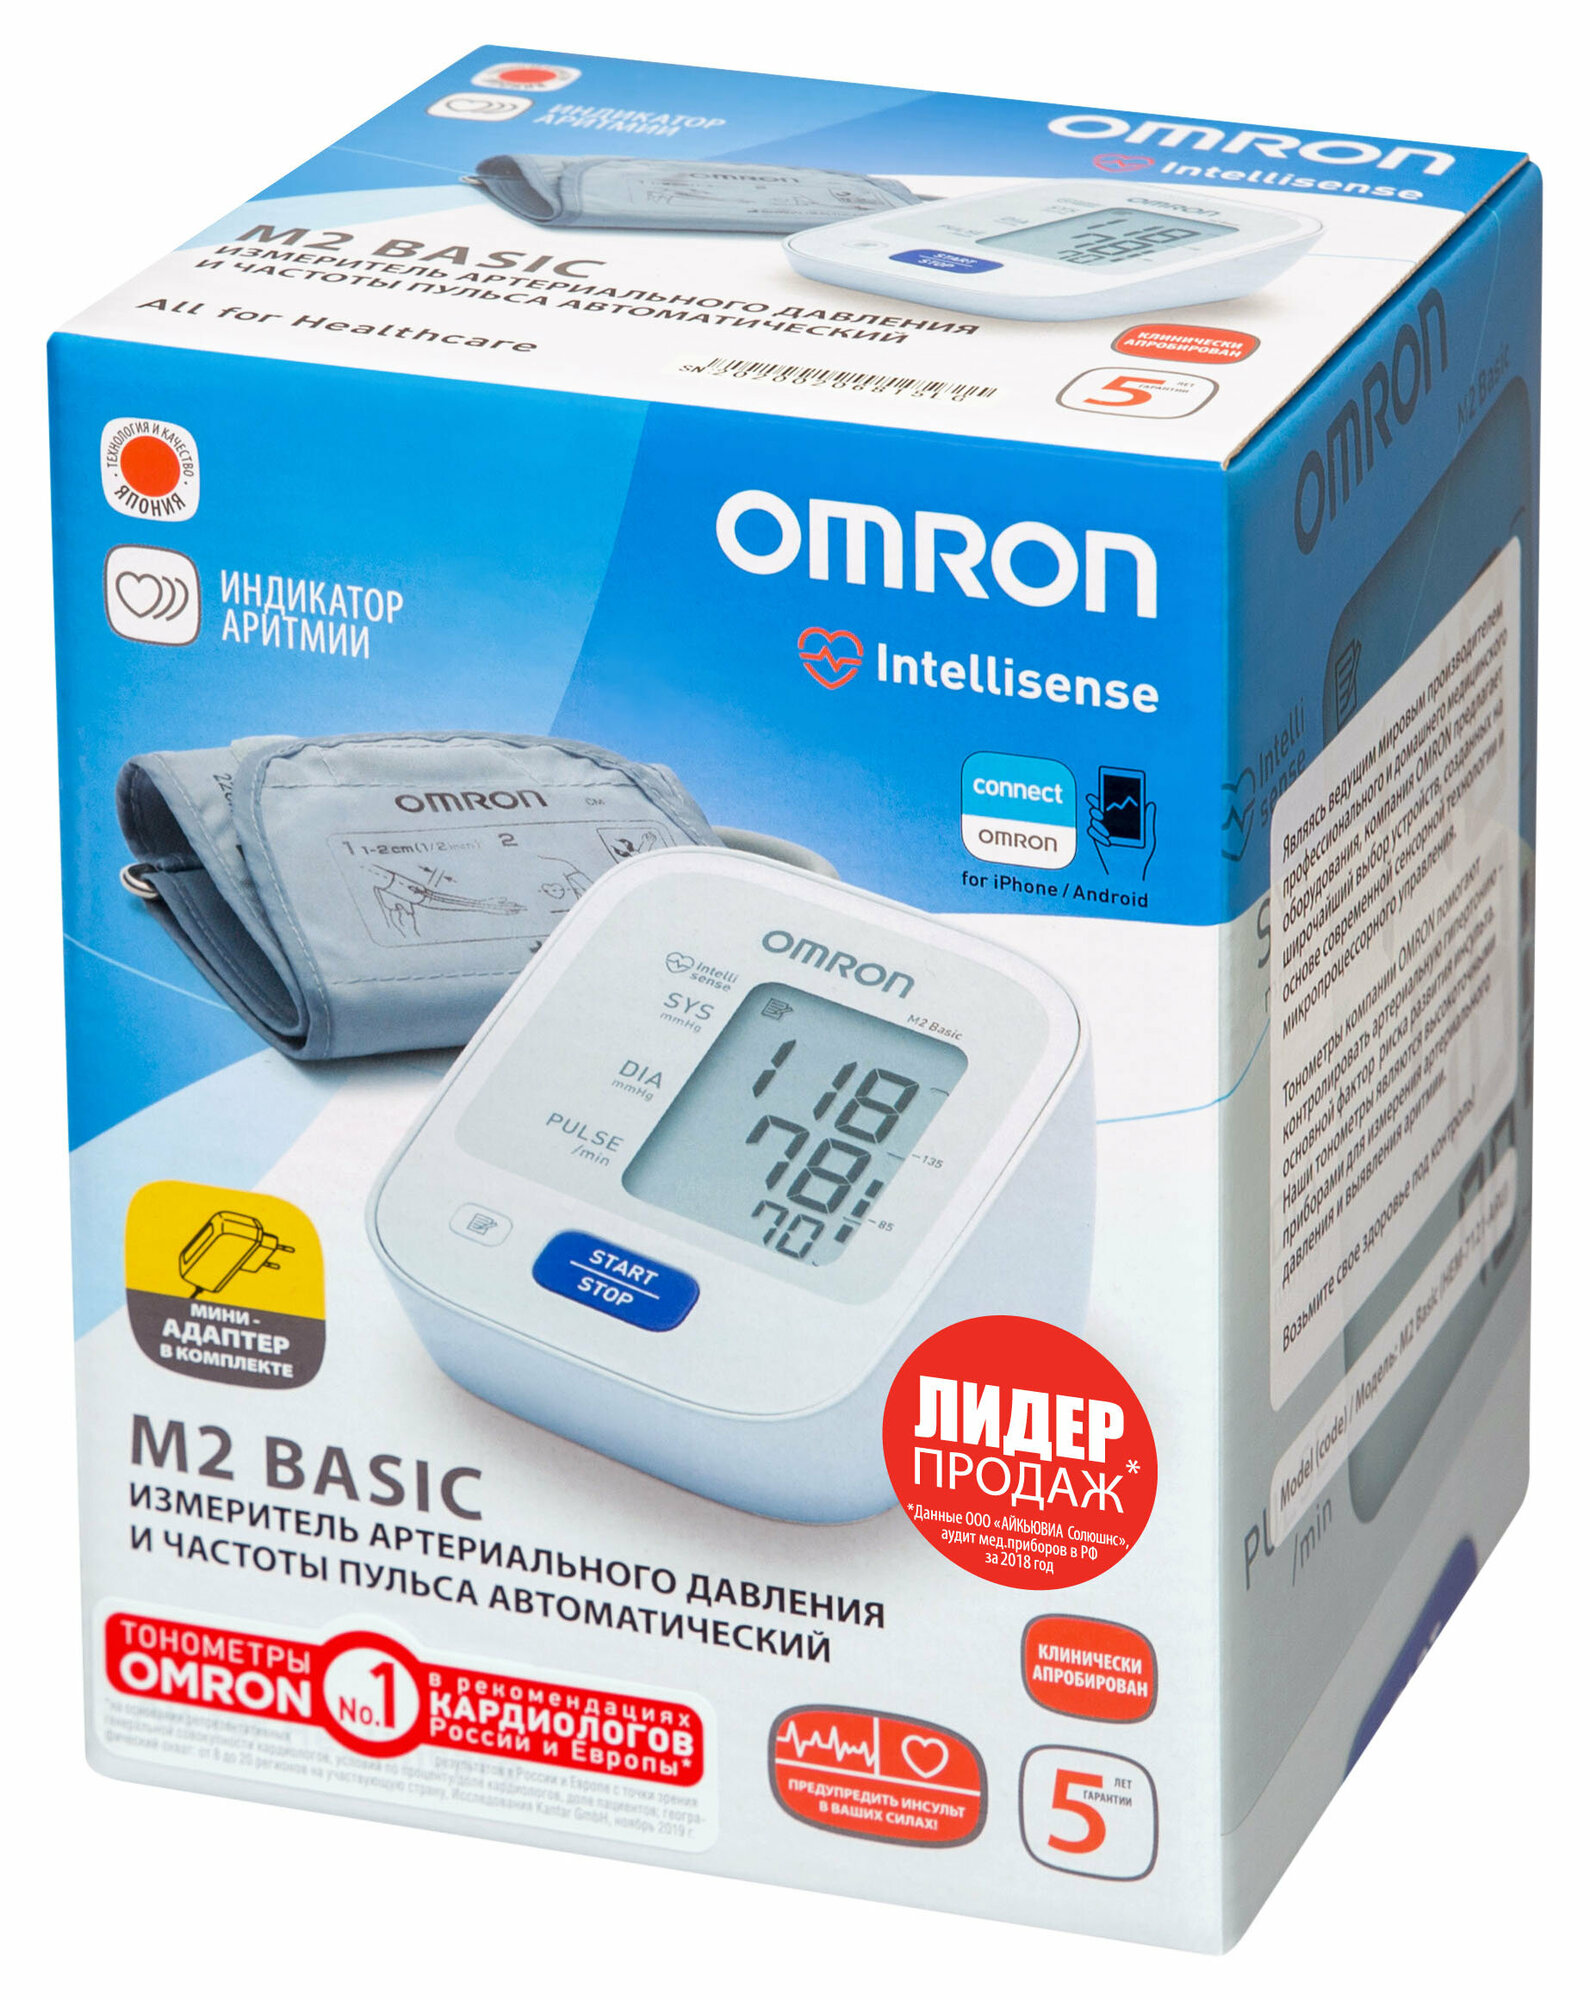 OMRON M2 Basic с адаптером и веерообразной манжетой Fan-Shaped (22-32 см)